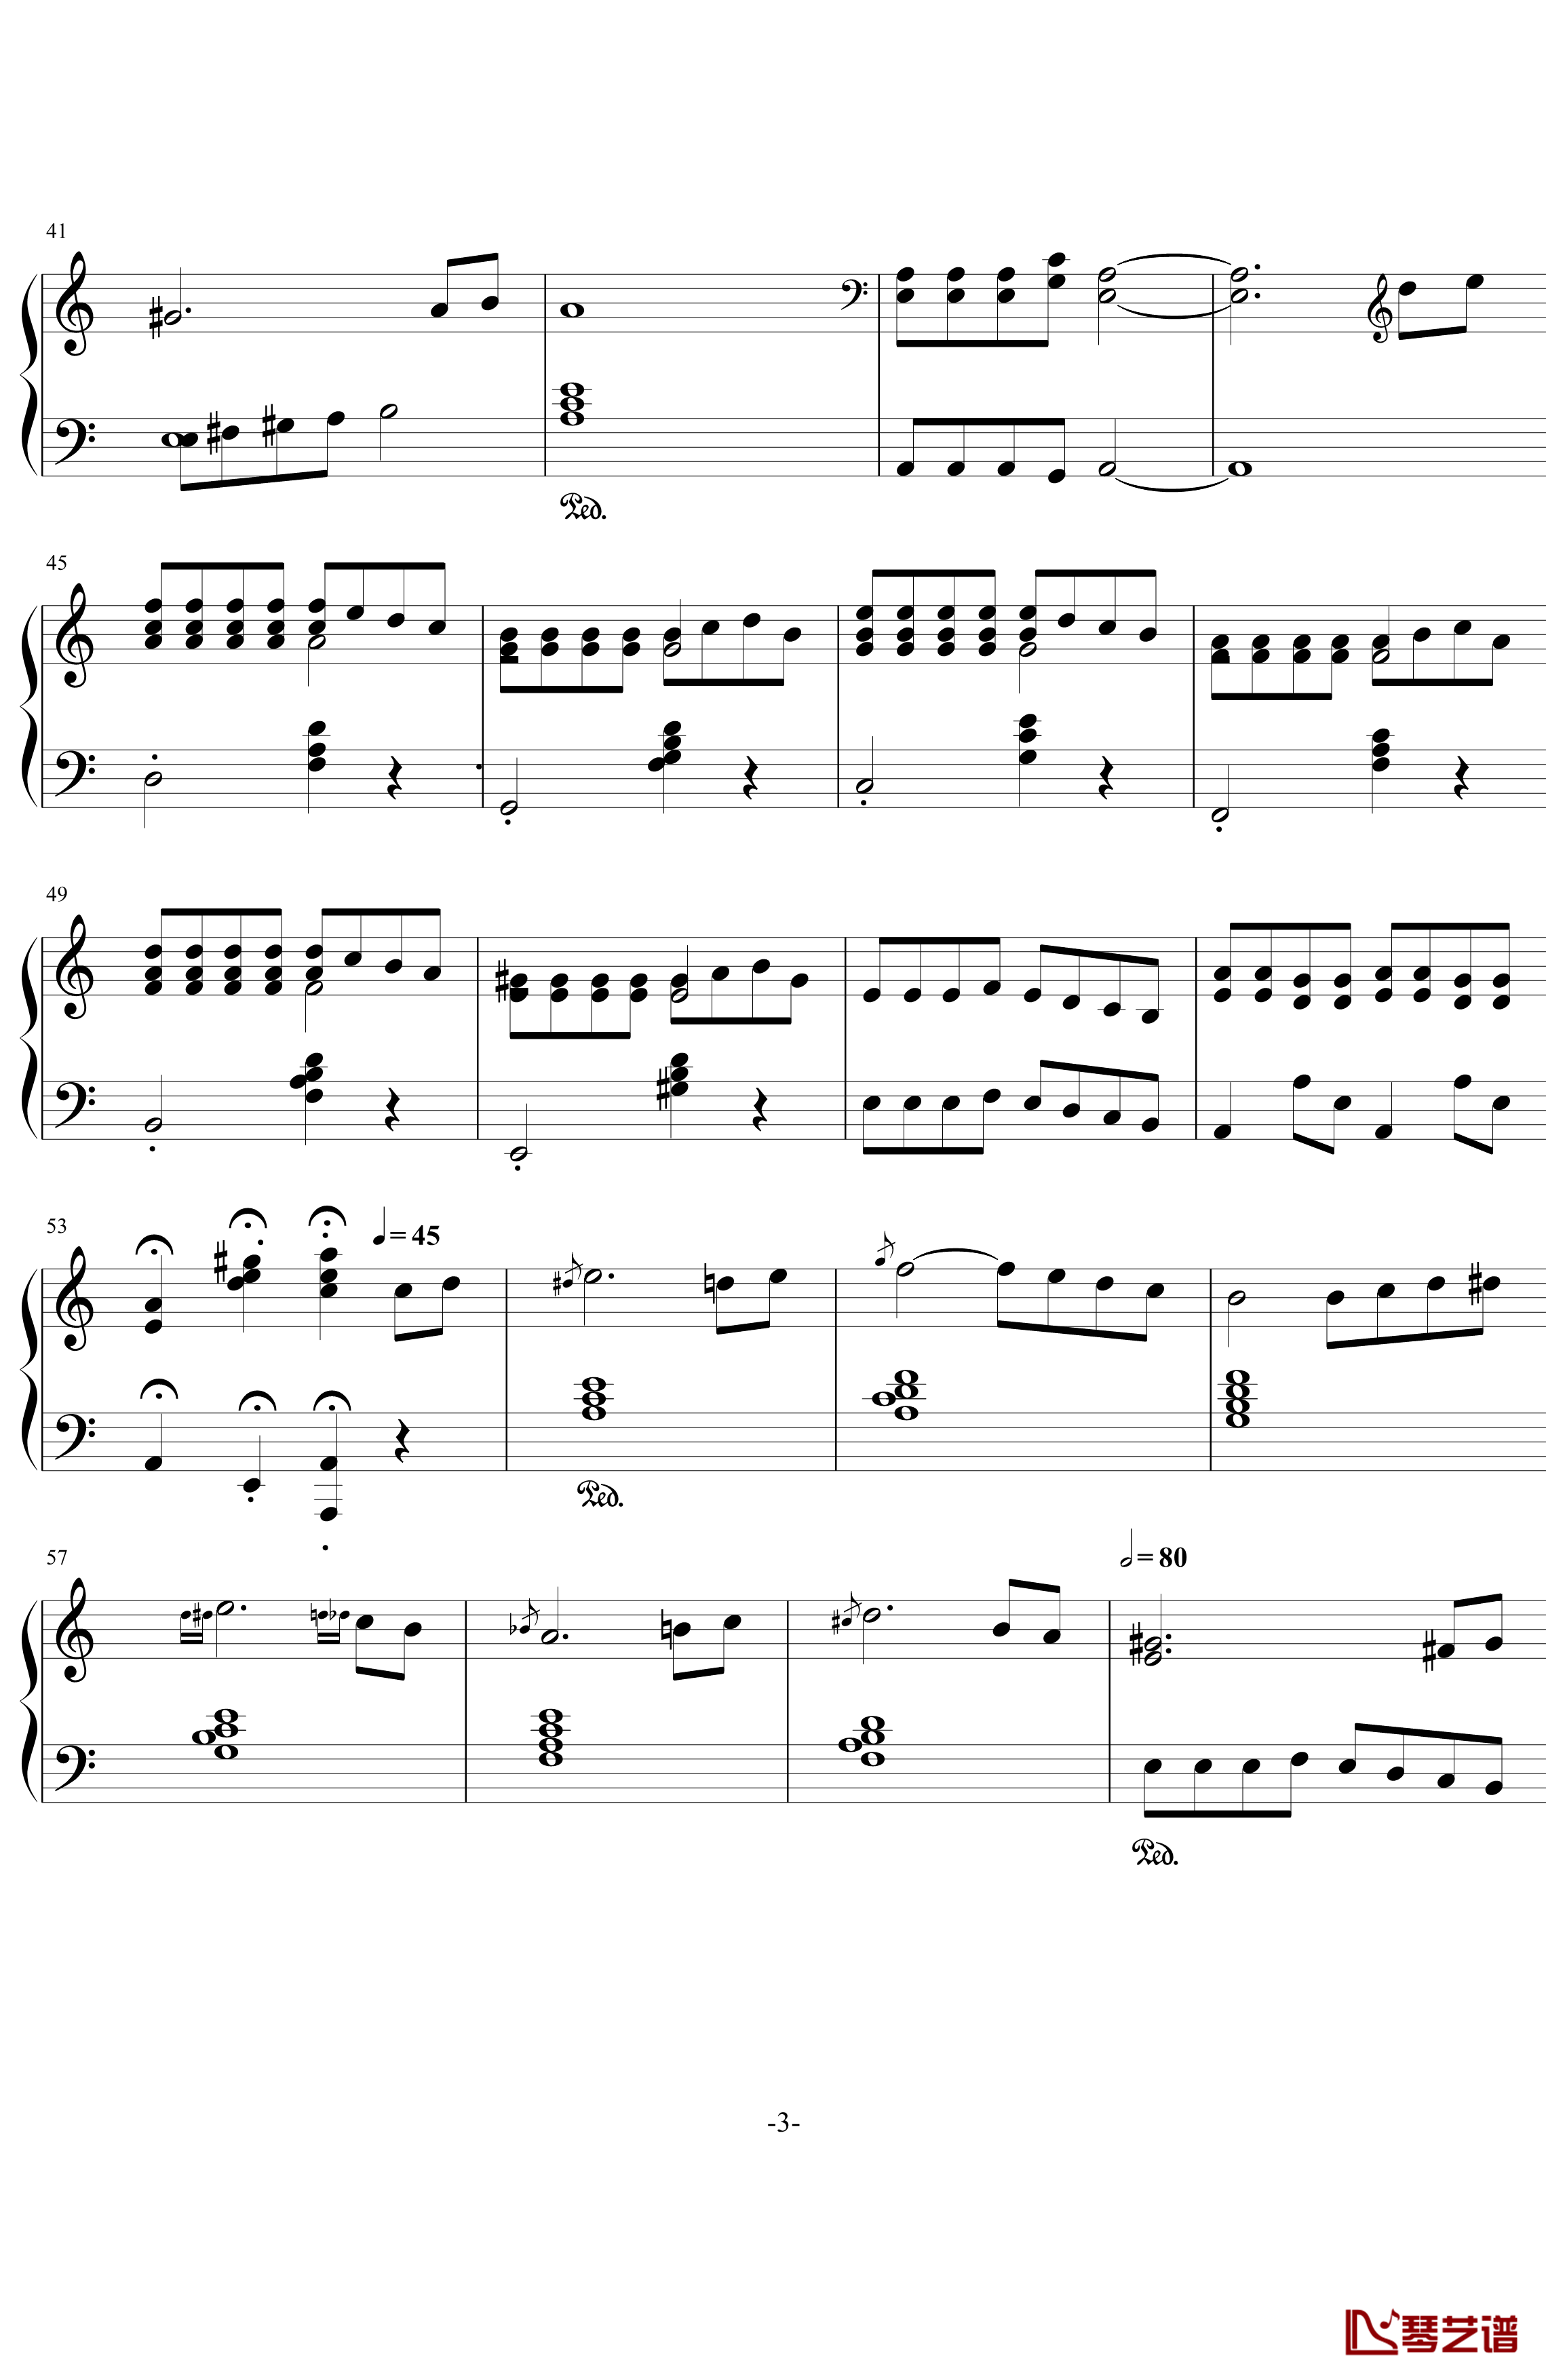 斯拉夫之歌钢琴谱-简化版-戴维.赫勒韦尔3